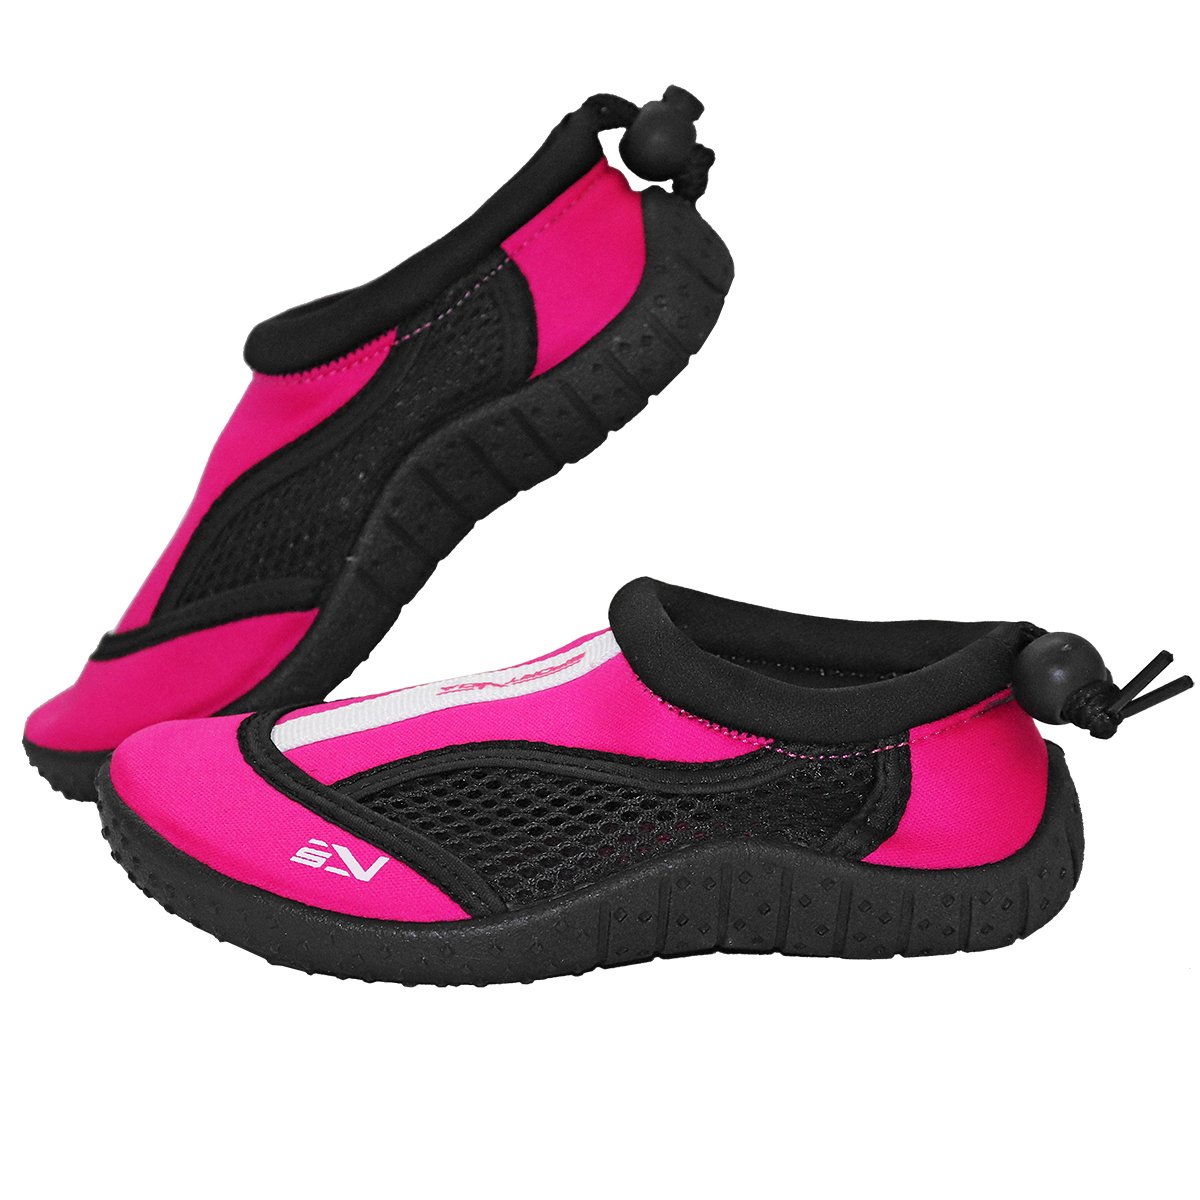 Обувь для пляжа и кораллов (аквашузы) SportVida SV-GY0001-R29 Size 29 Black/Pink